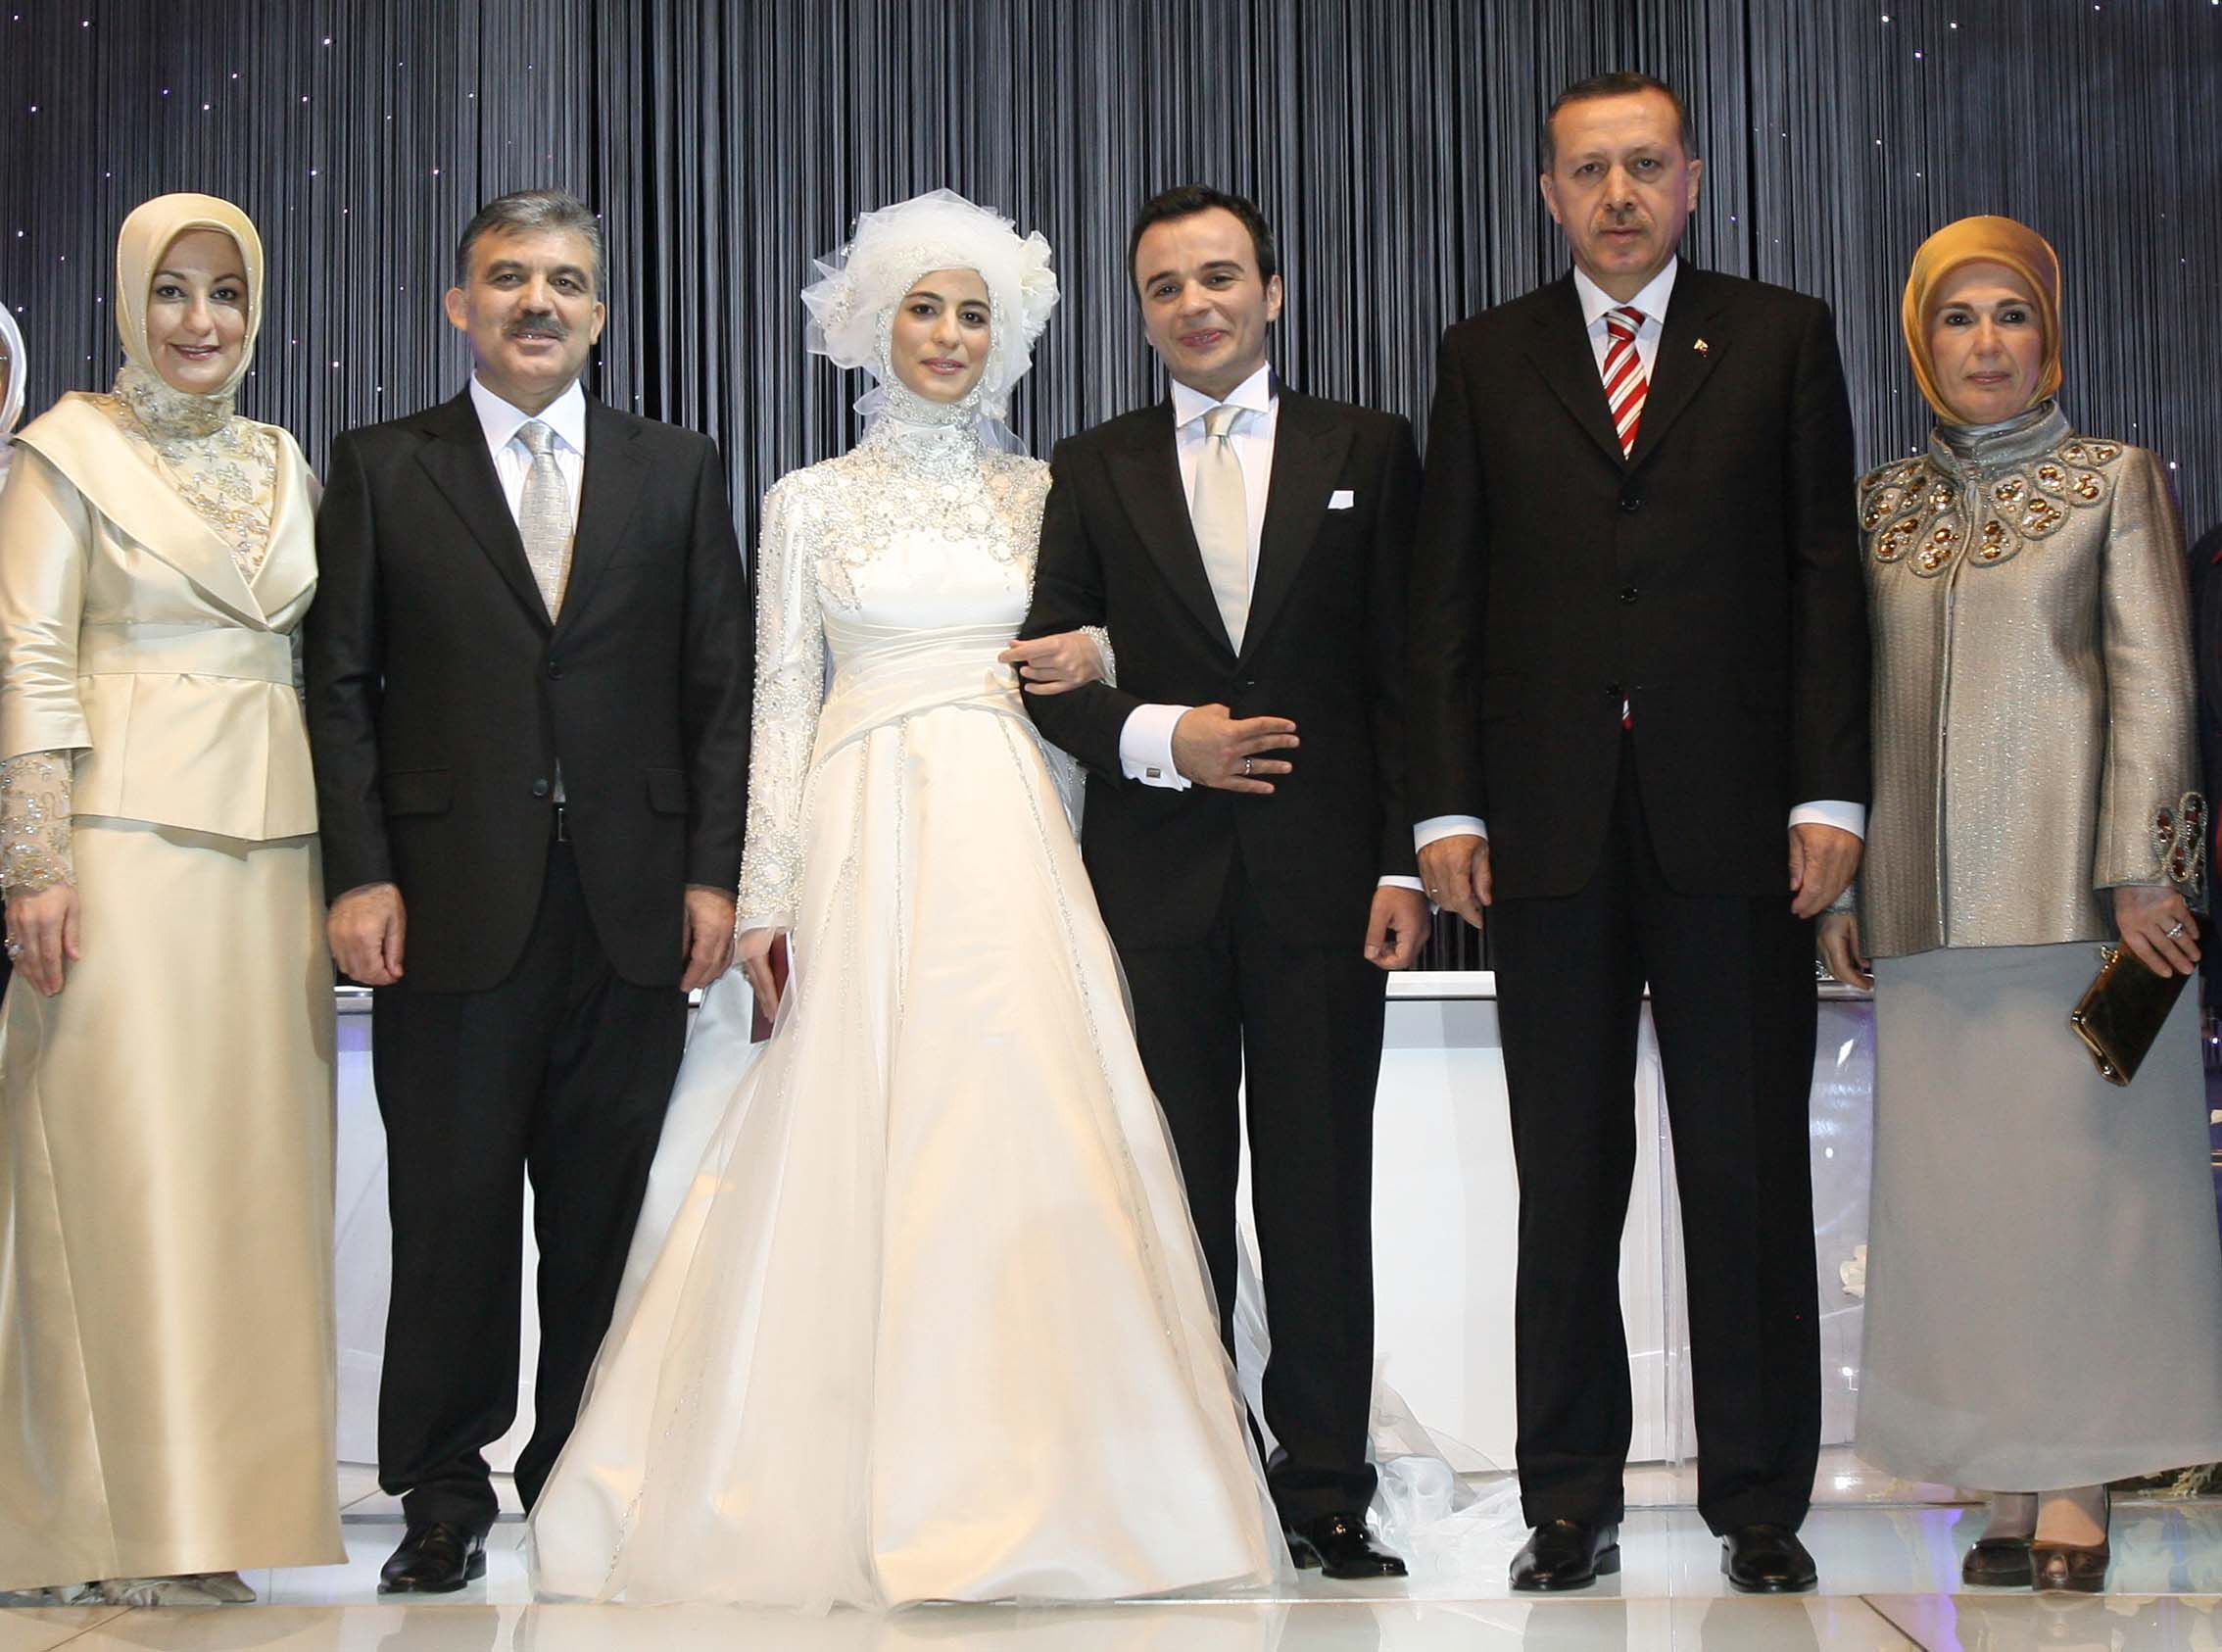 Реджеп тайип эрдоган: биография, личная жизнь, семья, жена, дети — фото